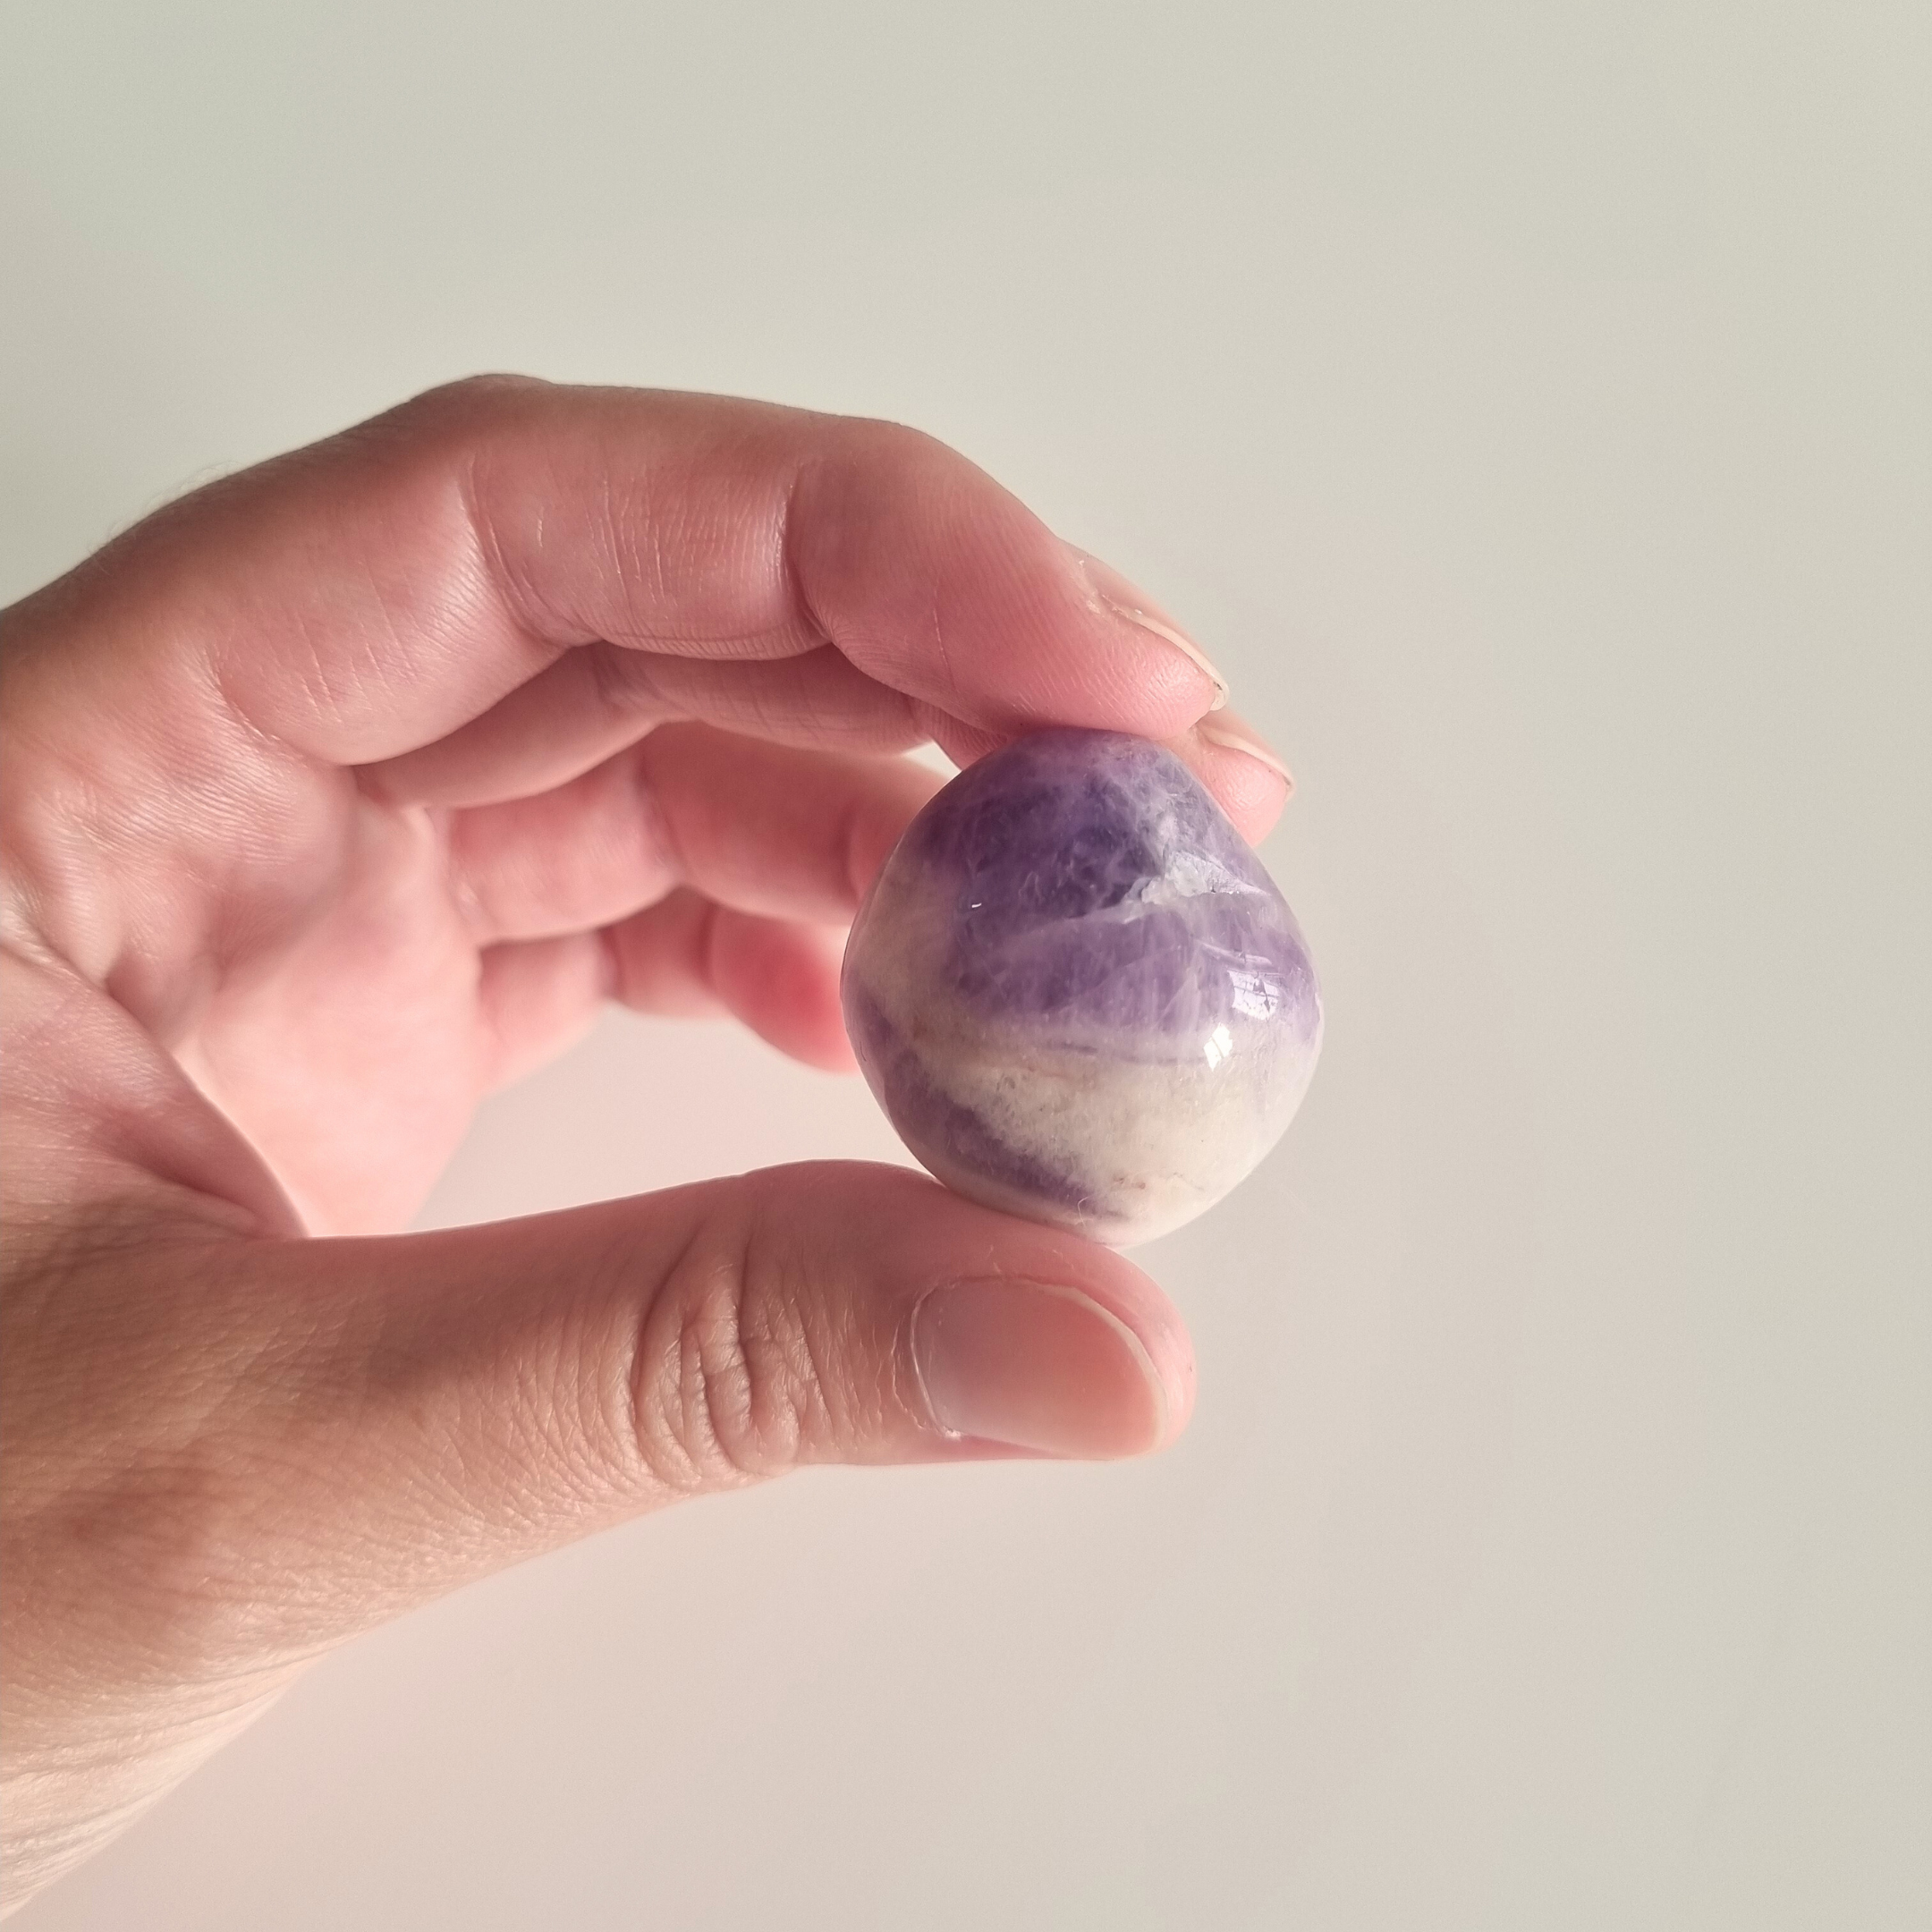 Amethyst - Pocket stone